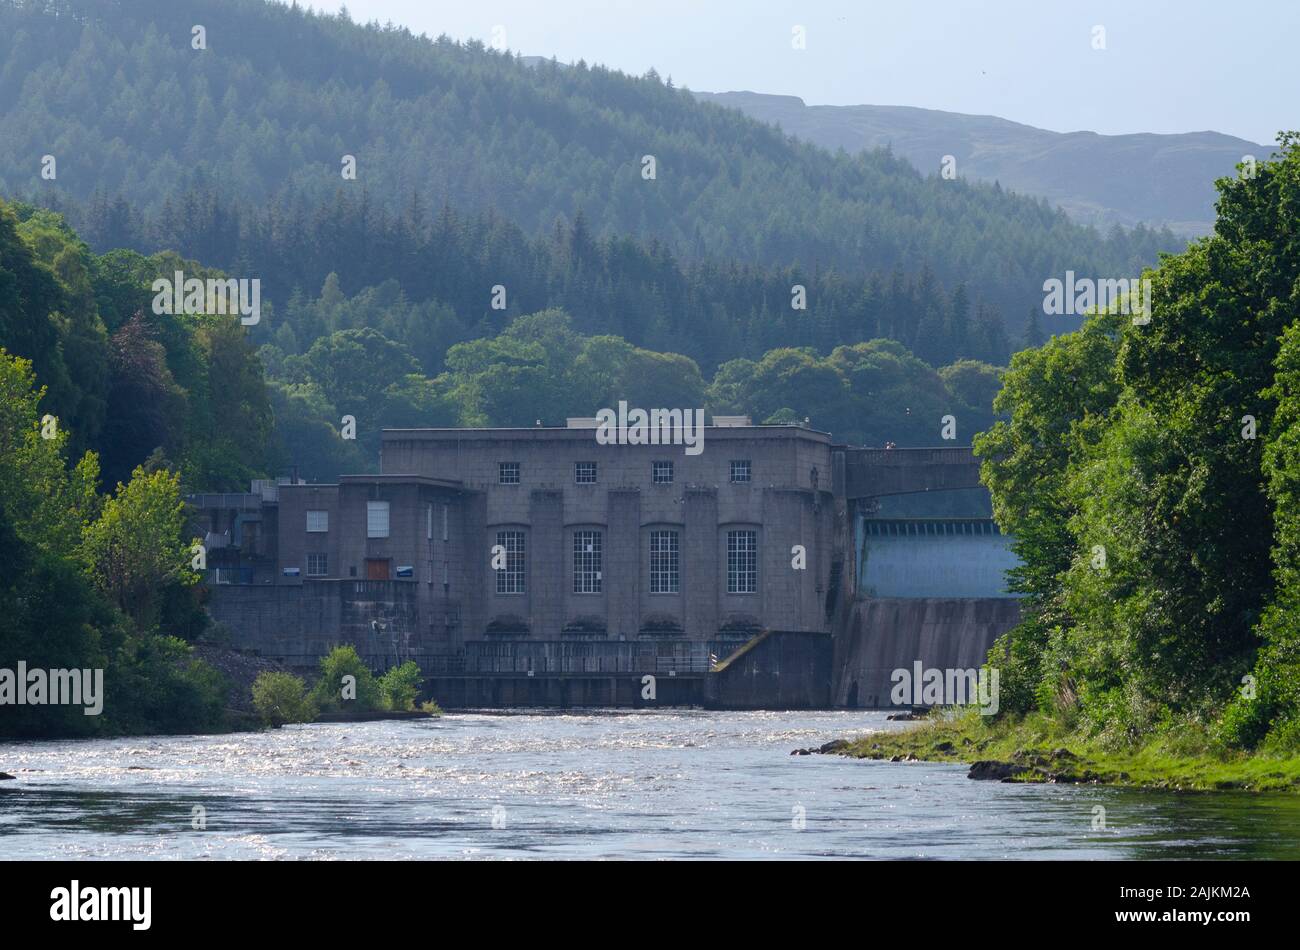 Barrage hydroélectrique sur la rivière Tay, dans le Perthshire Pitlochry Scotland UK Banque D'Images